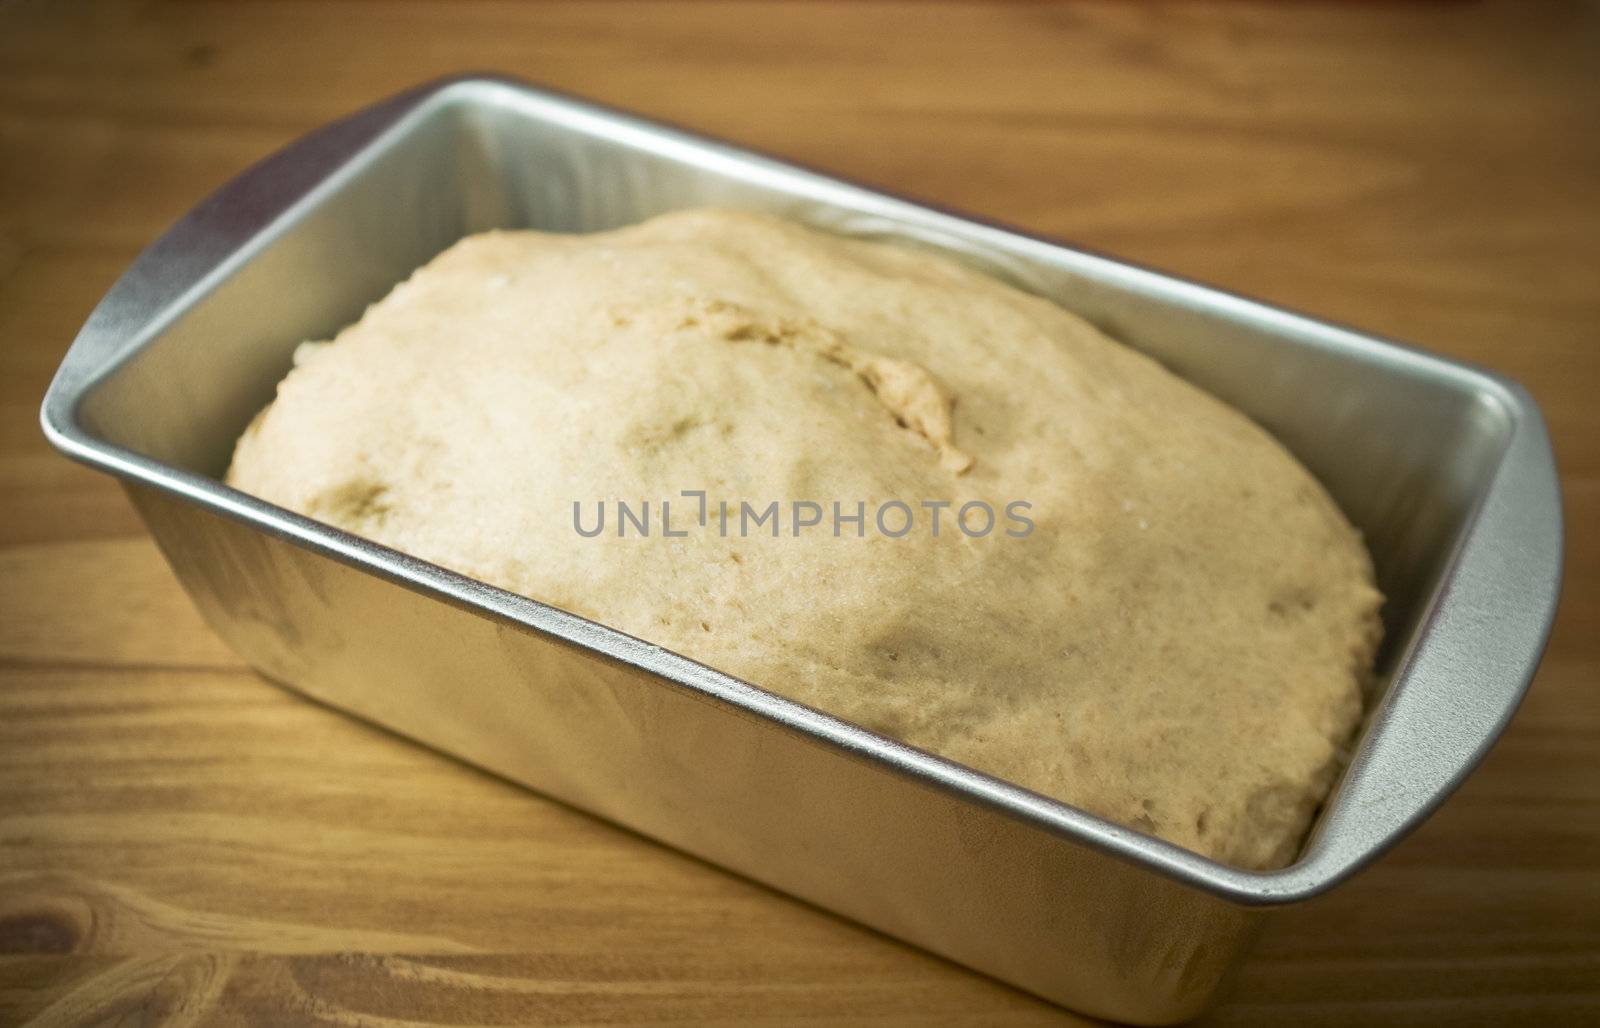 Fresh whole wheat dough in a baking pan

